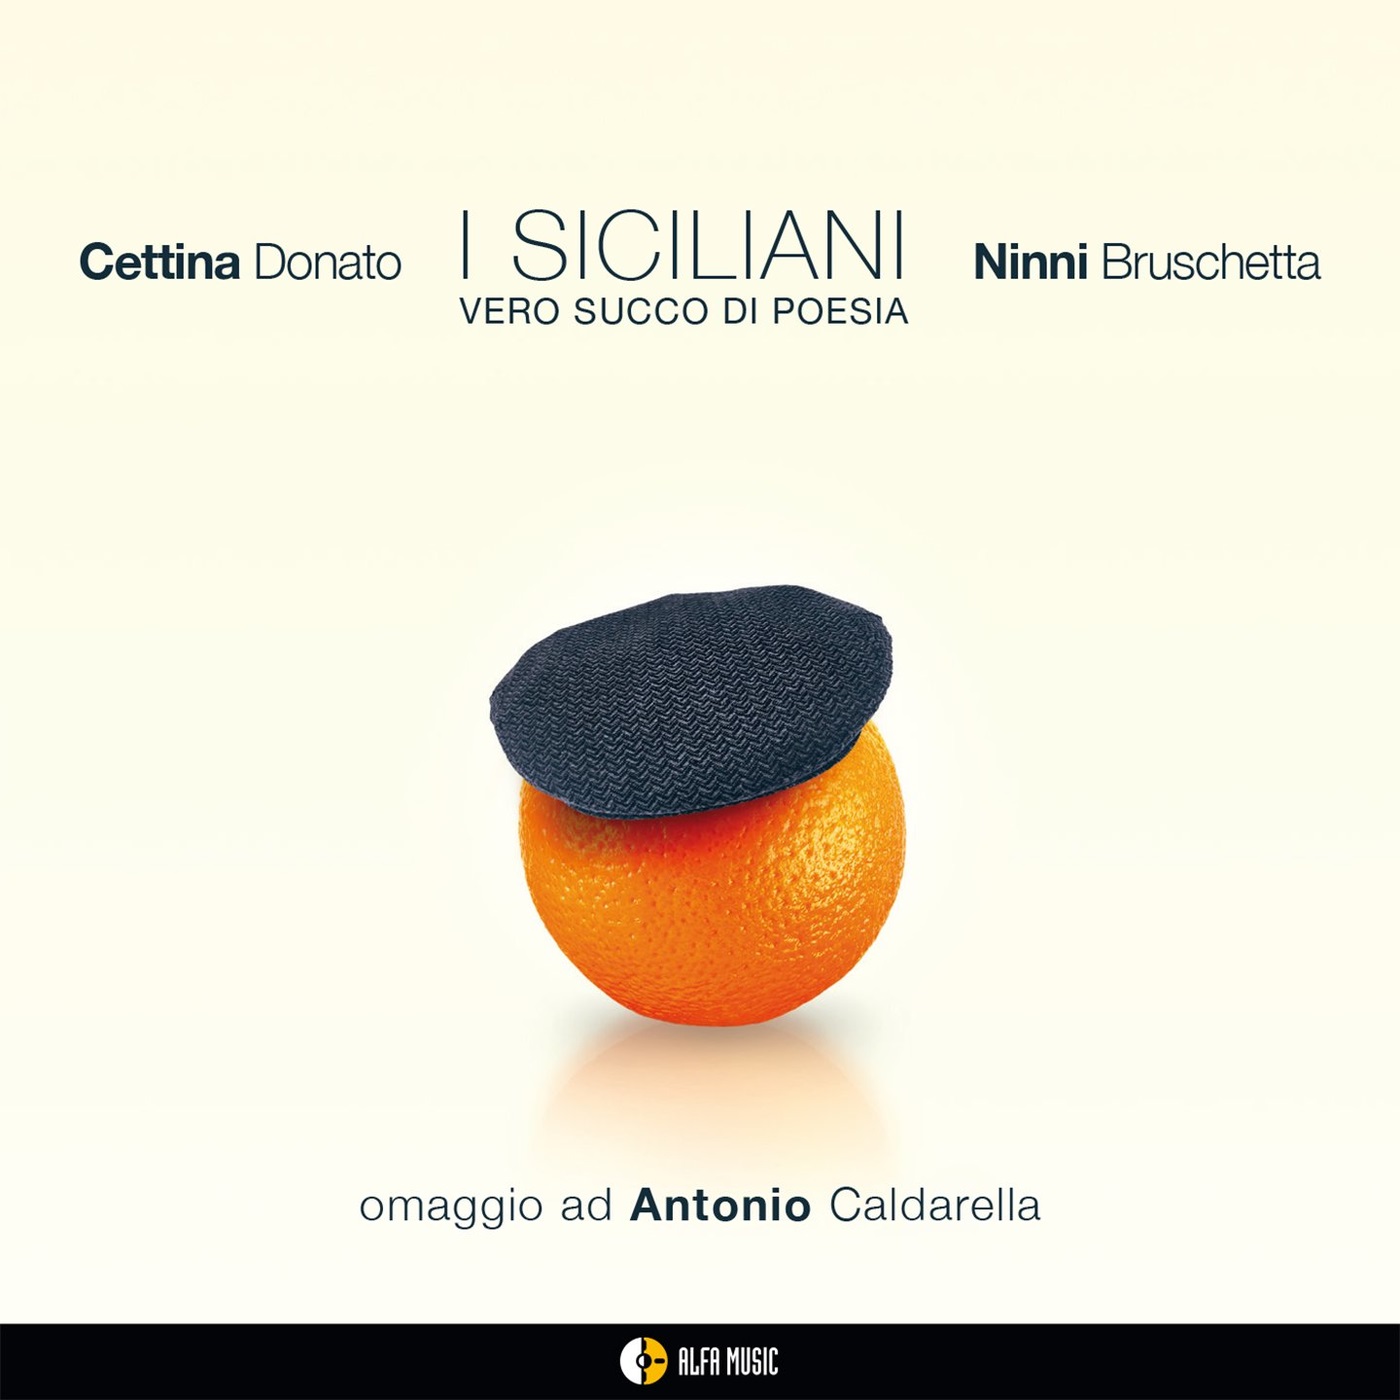 Cettina Donato & Ninni Bruschetta – I siciliani (Vero succo di poesia) (2021) [FLAC FLAC 24bit/96kHz]